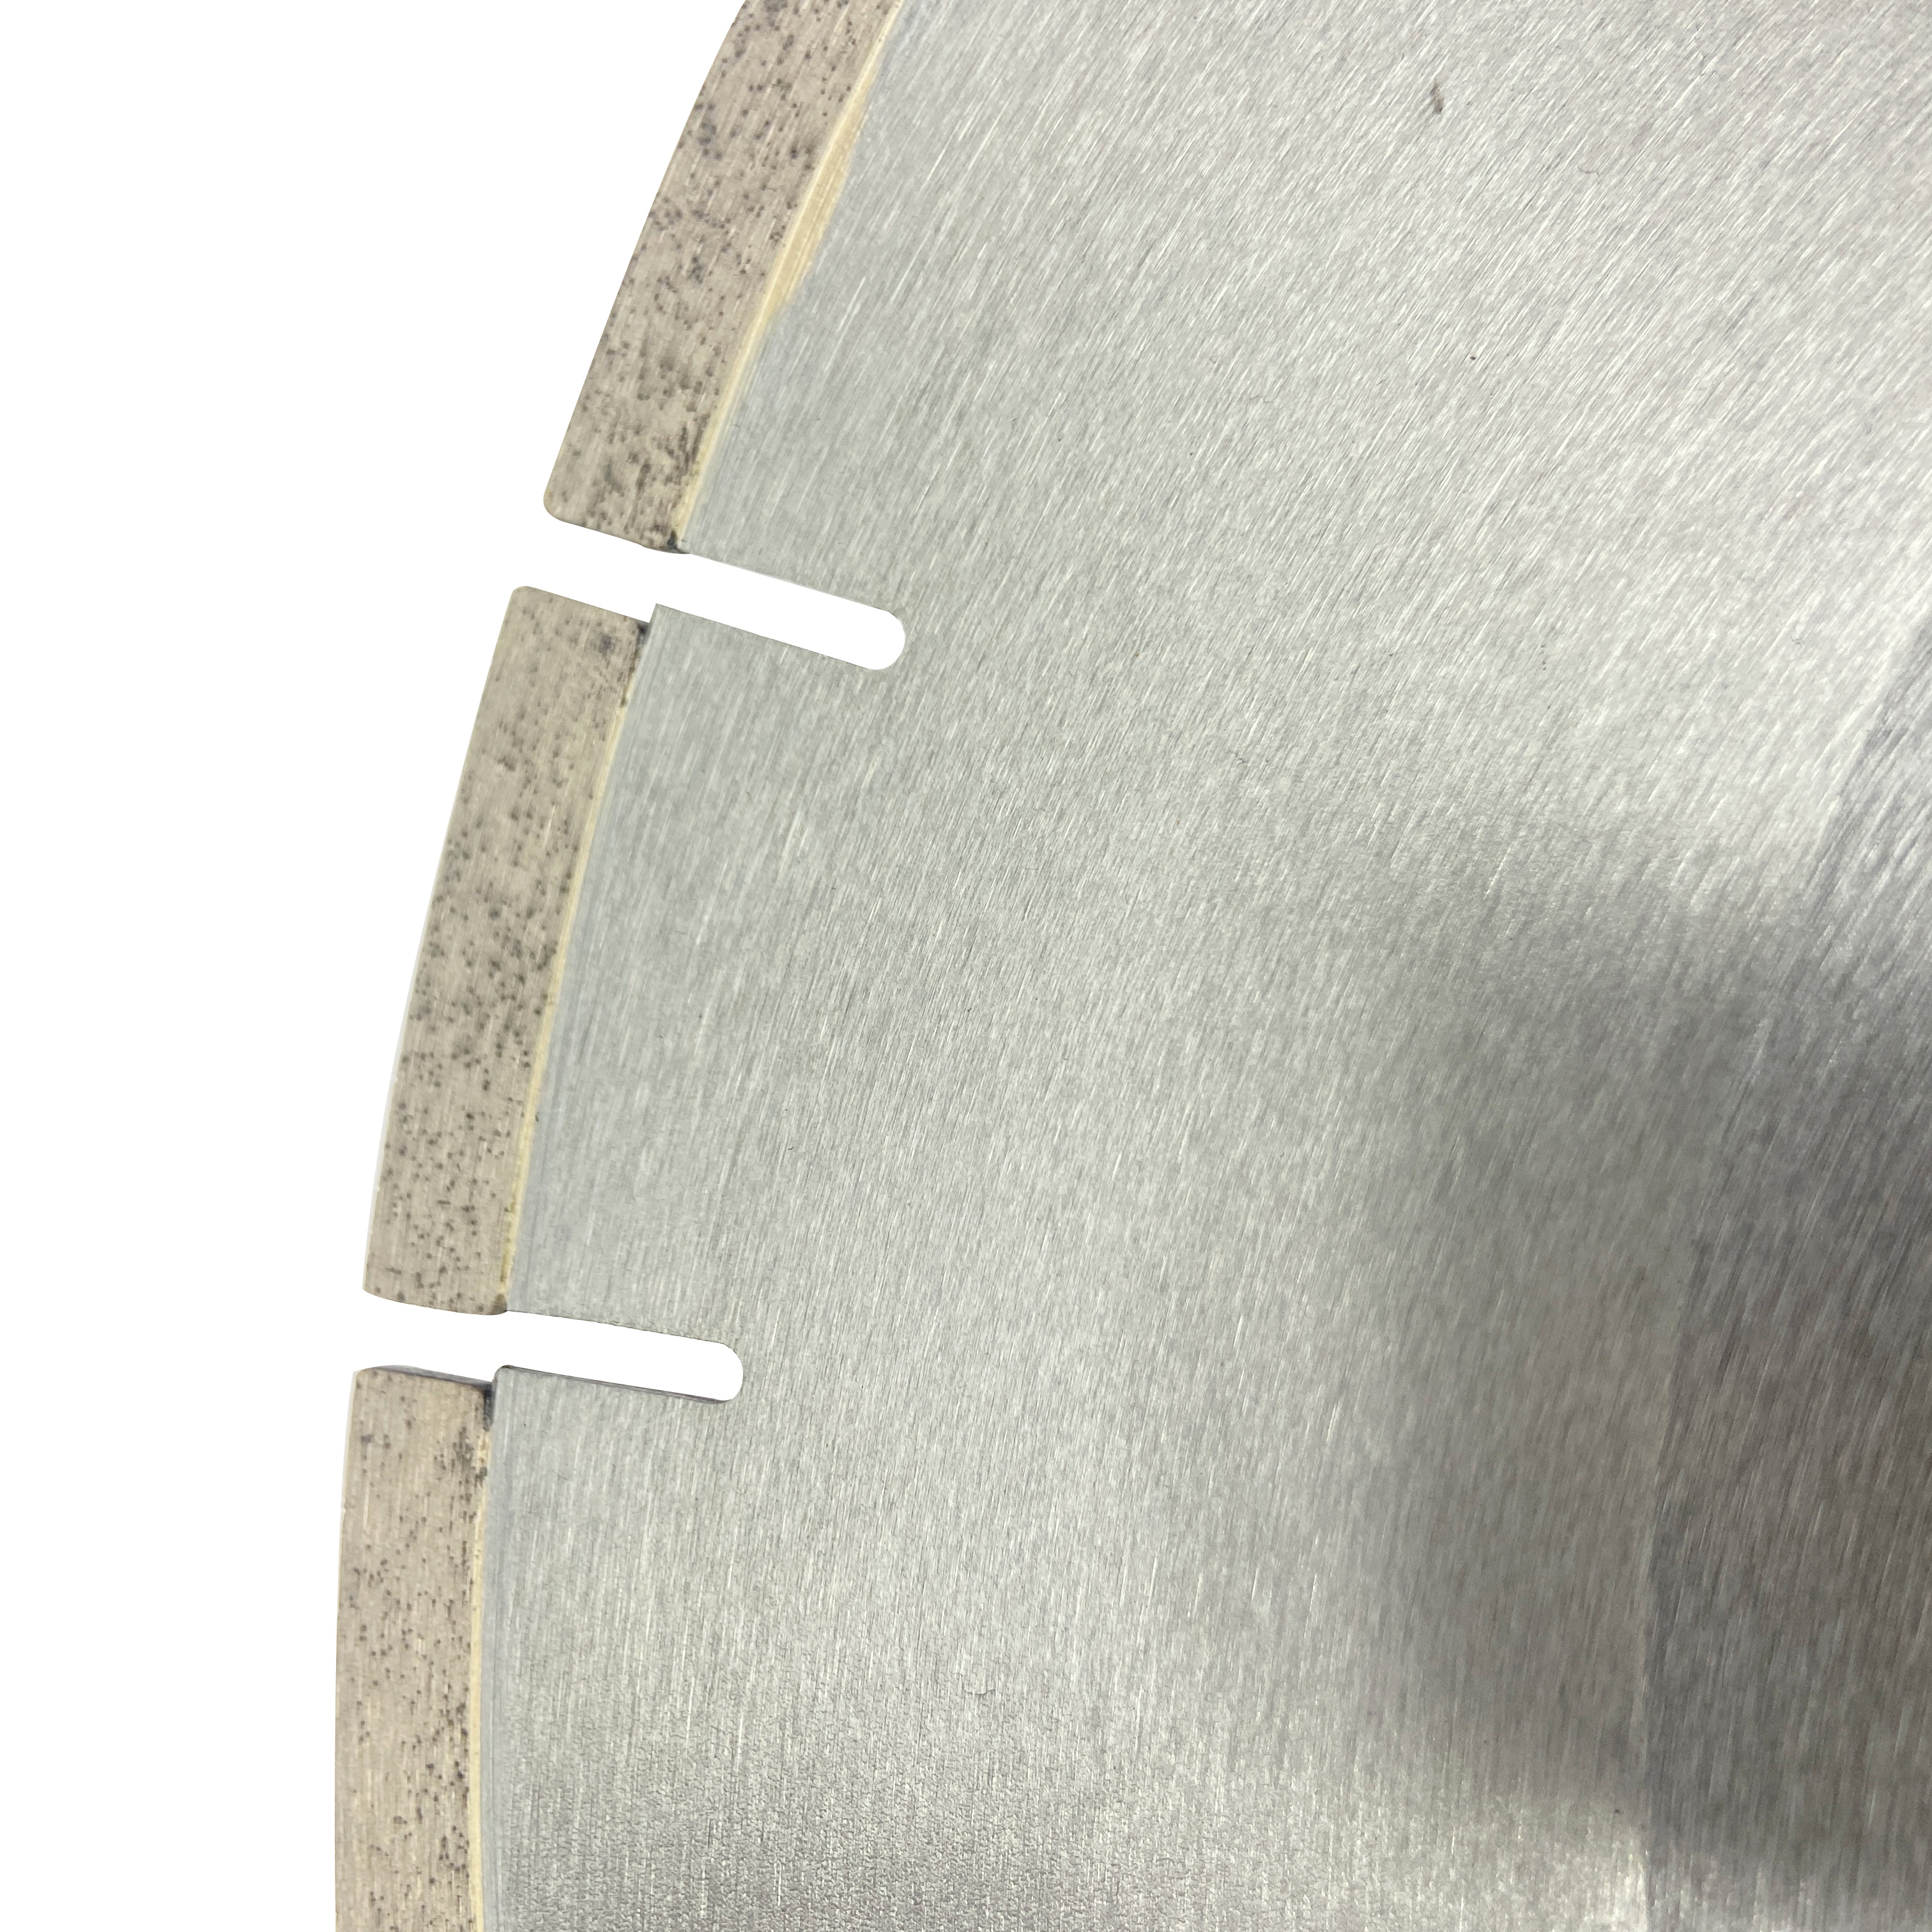 Premium Gümüş lehimli 12 inç 456*10*60mm parçalı J-yuvası elmas testere bıçağı Türkiye Seramik Dekton'u kesmek için